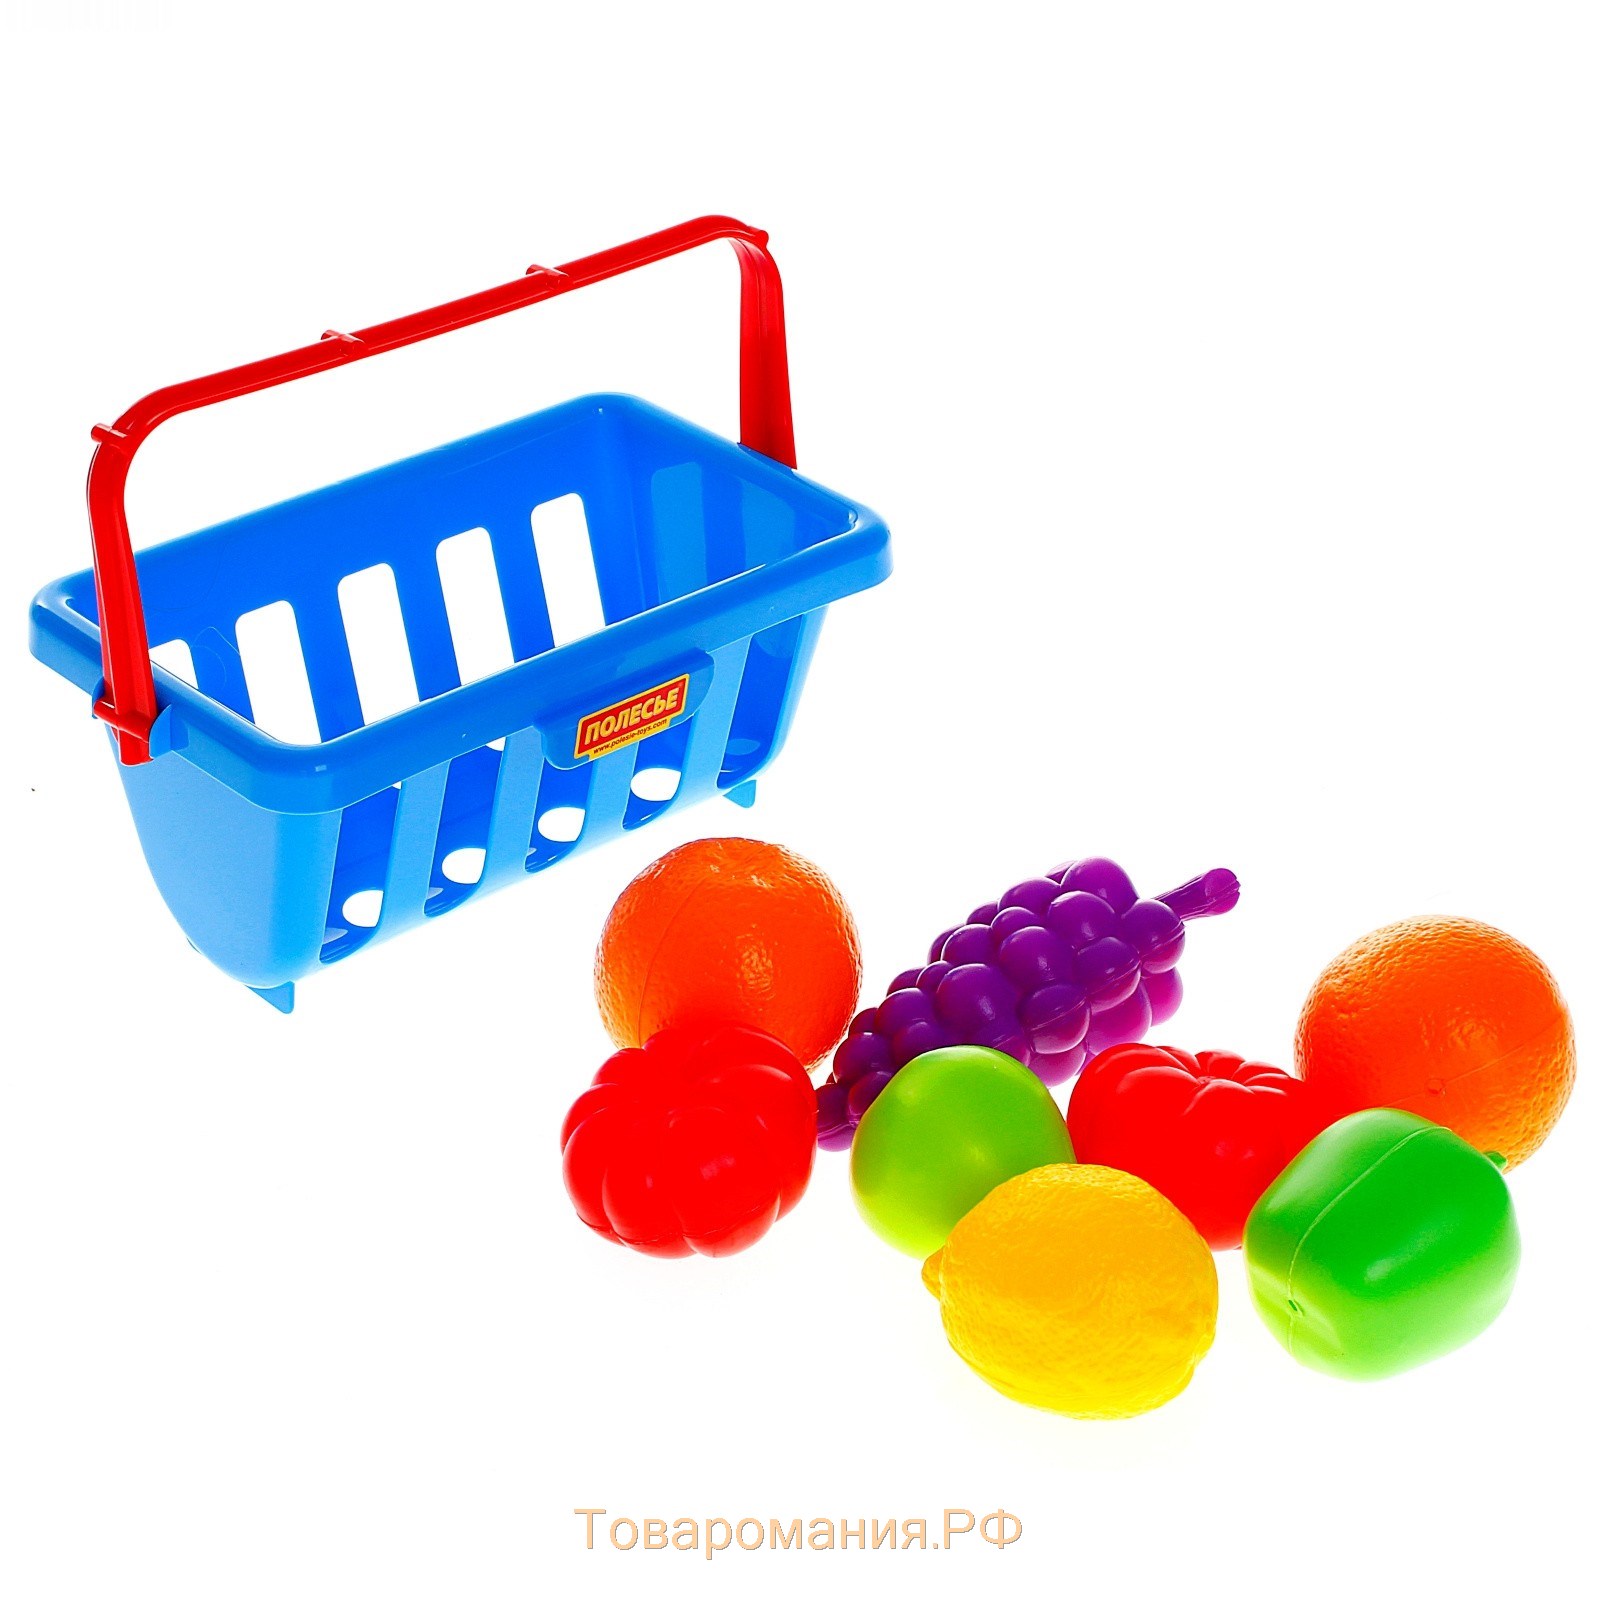 Набор продуктов с корзинкой №2, 9 элементов, цвета МИКС